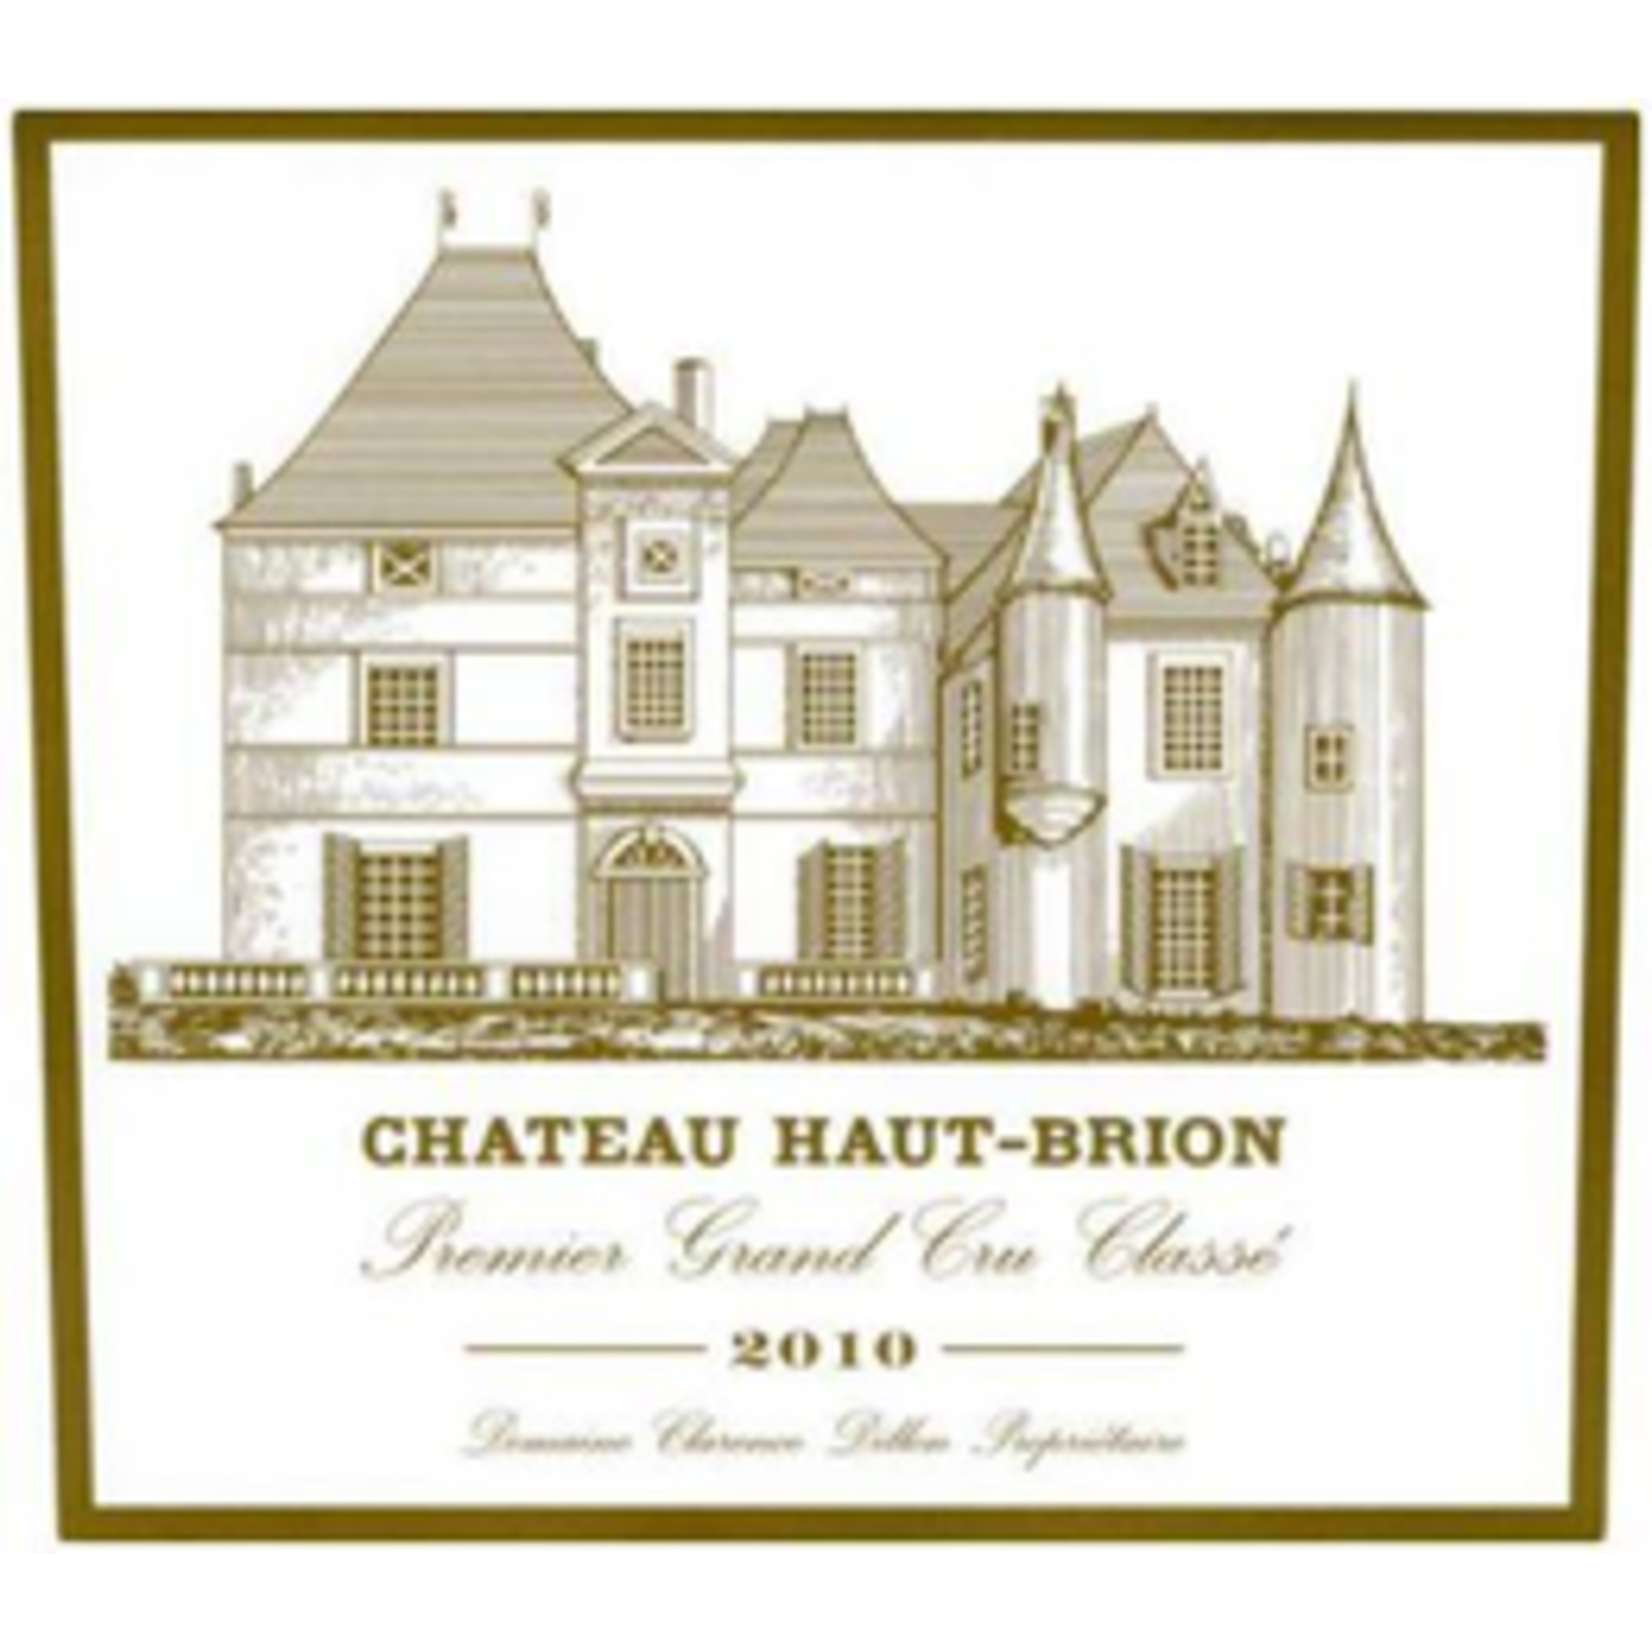 Wine Chateau Haut Brion Pessac Leognan 1er Cru Classe 2010